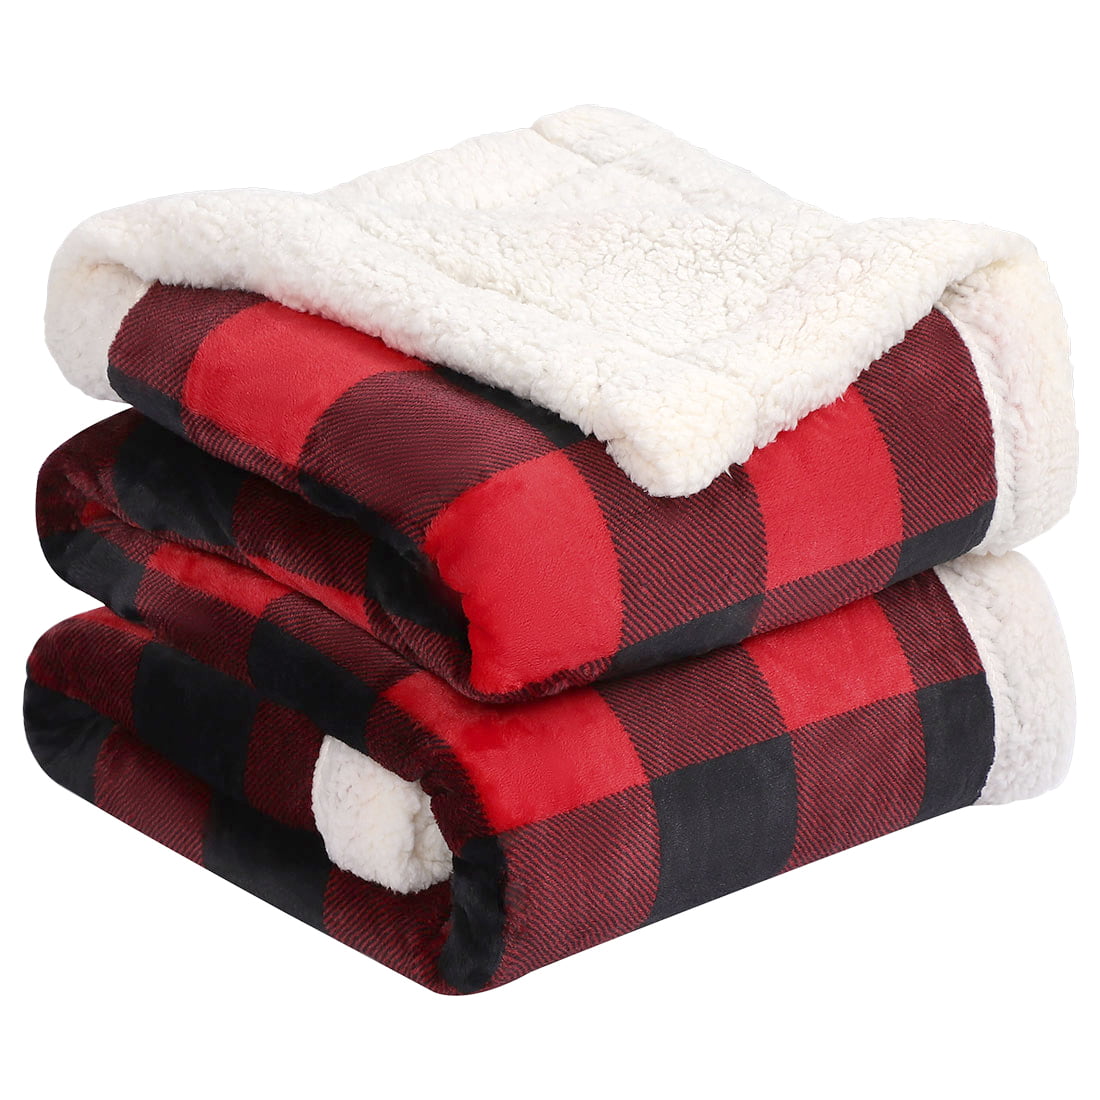 Plaid Printed Plush Sherpa Throw Blanket Holiday 60x50" White/Red/Green Checks